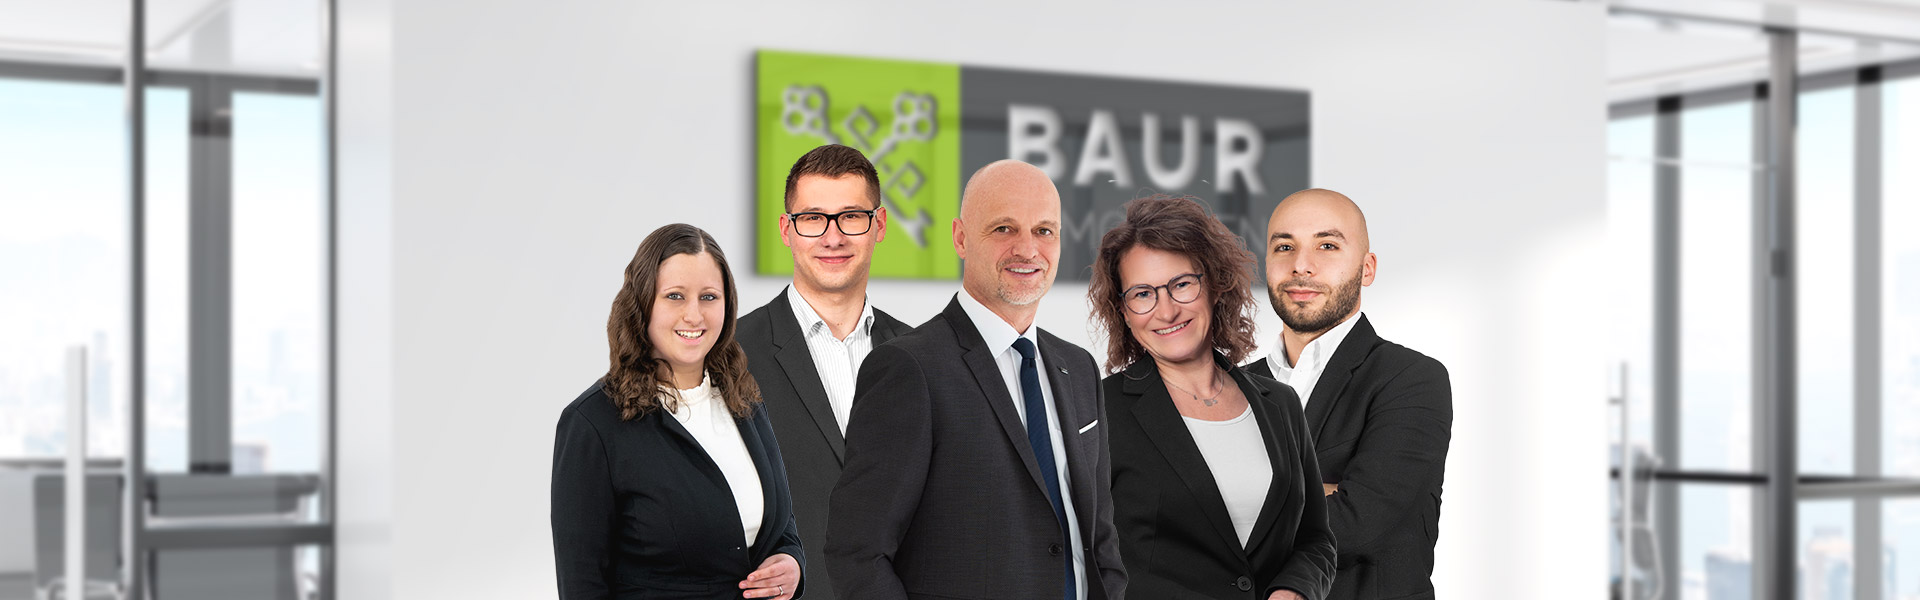 Das Team von BAUR Immobilien - Ihr Immobilienmakler in Ulm